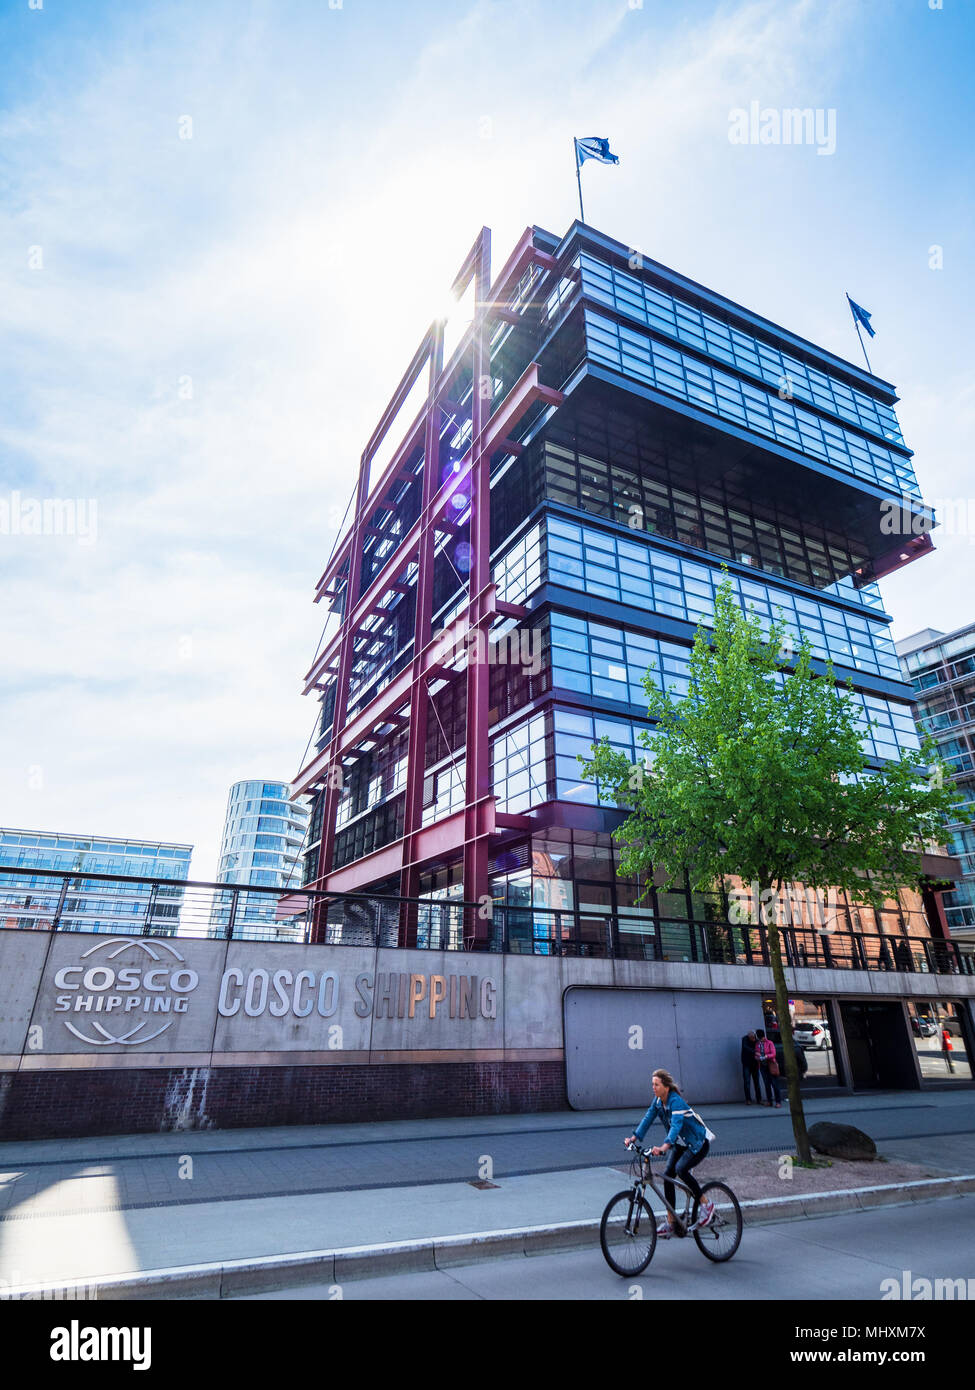 Cosco uffici di spedizione in Hamburg HafenCity district - Cosco - China Ocean Shipping Company è una società di Stato cinese di proprietà di spedizioni e logistica aziendale Foto Stock